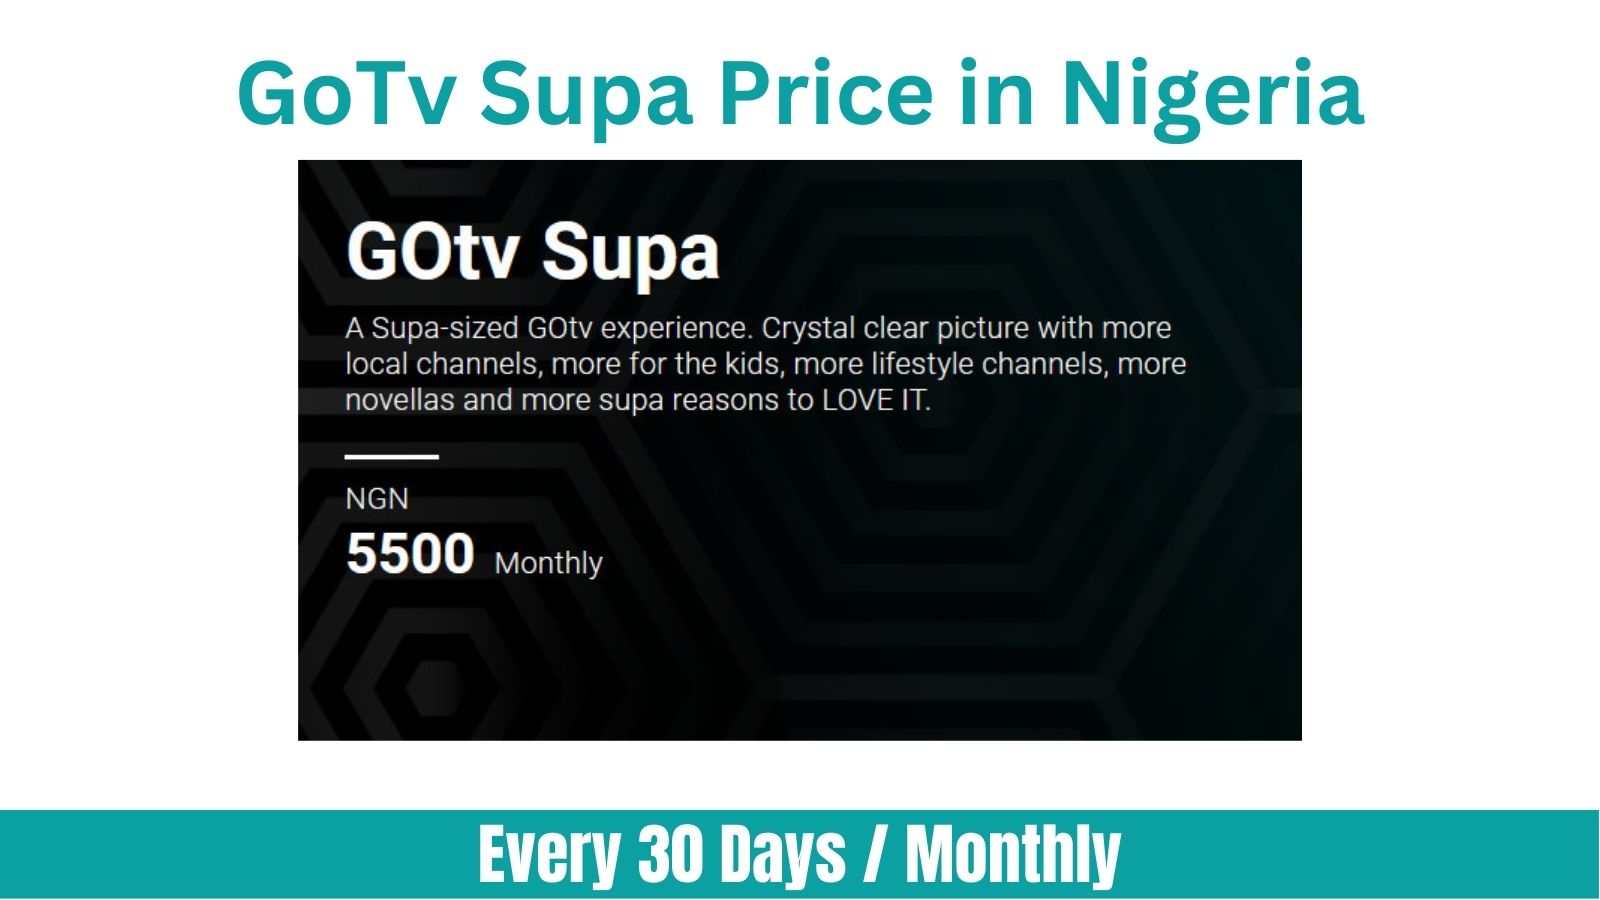 GoTv Supa Price in Nigeria